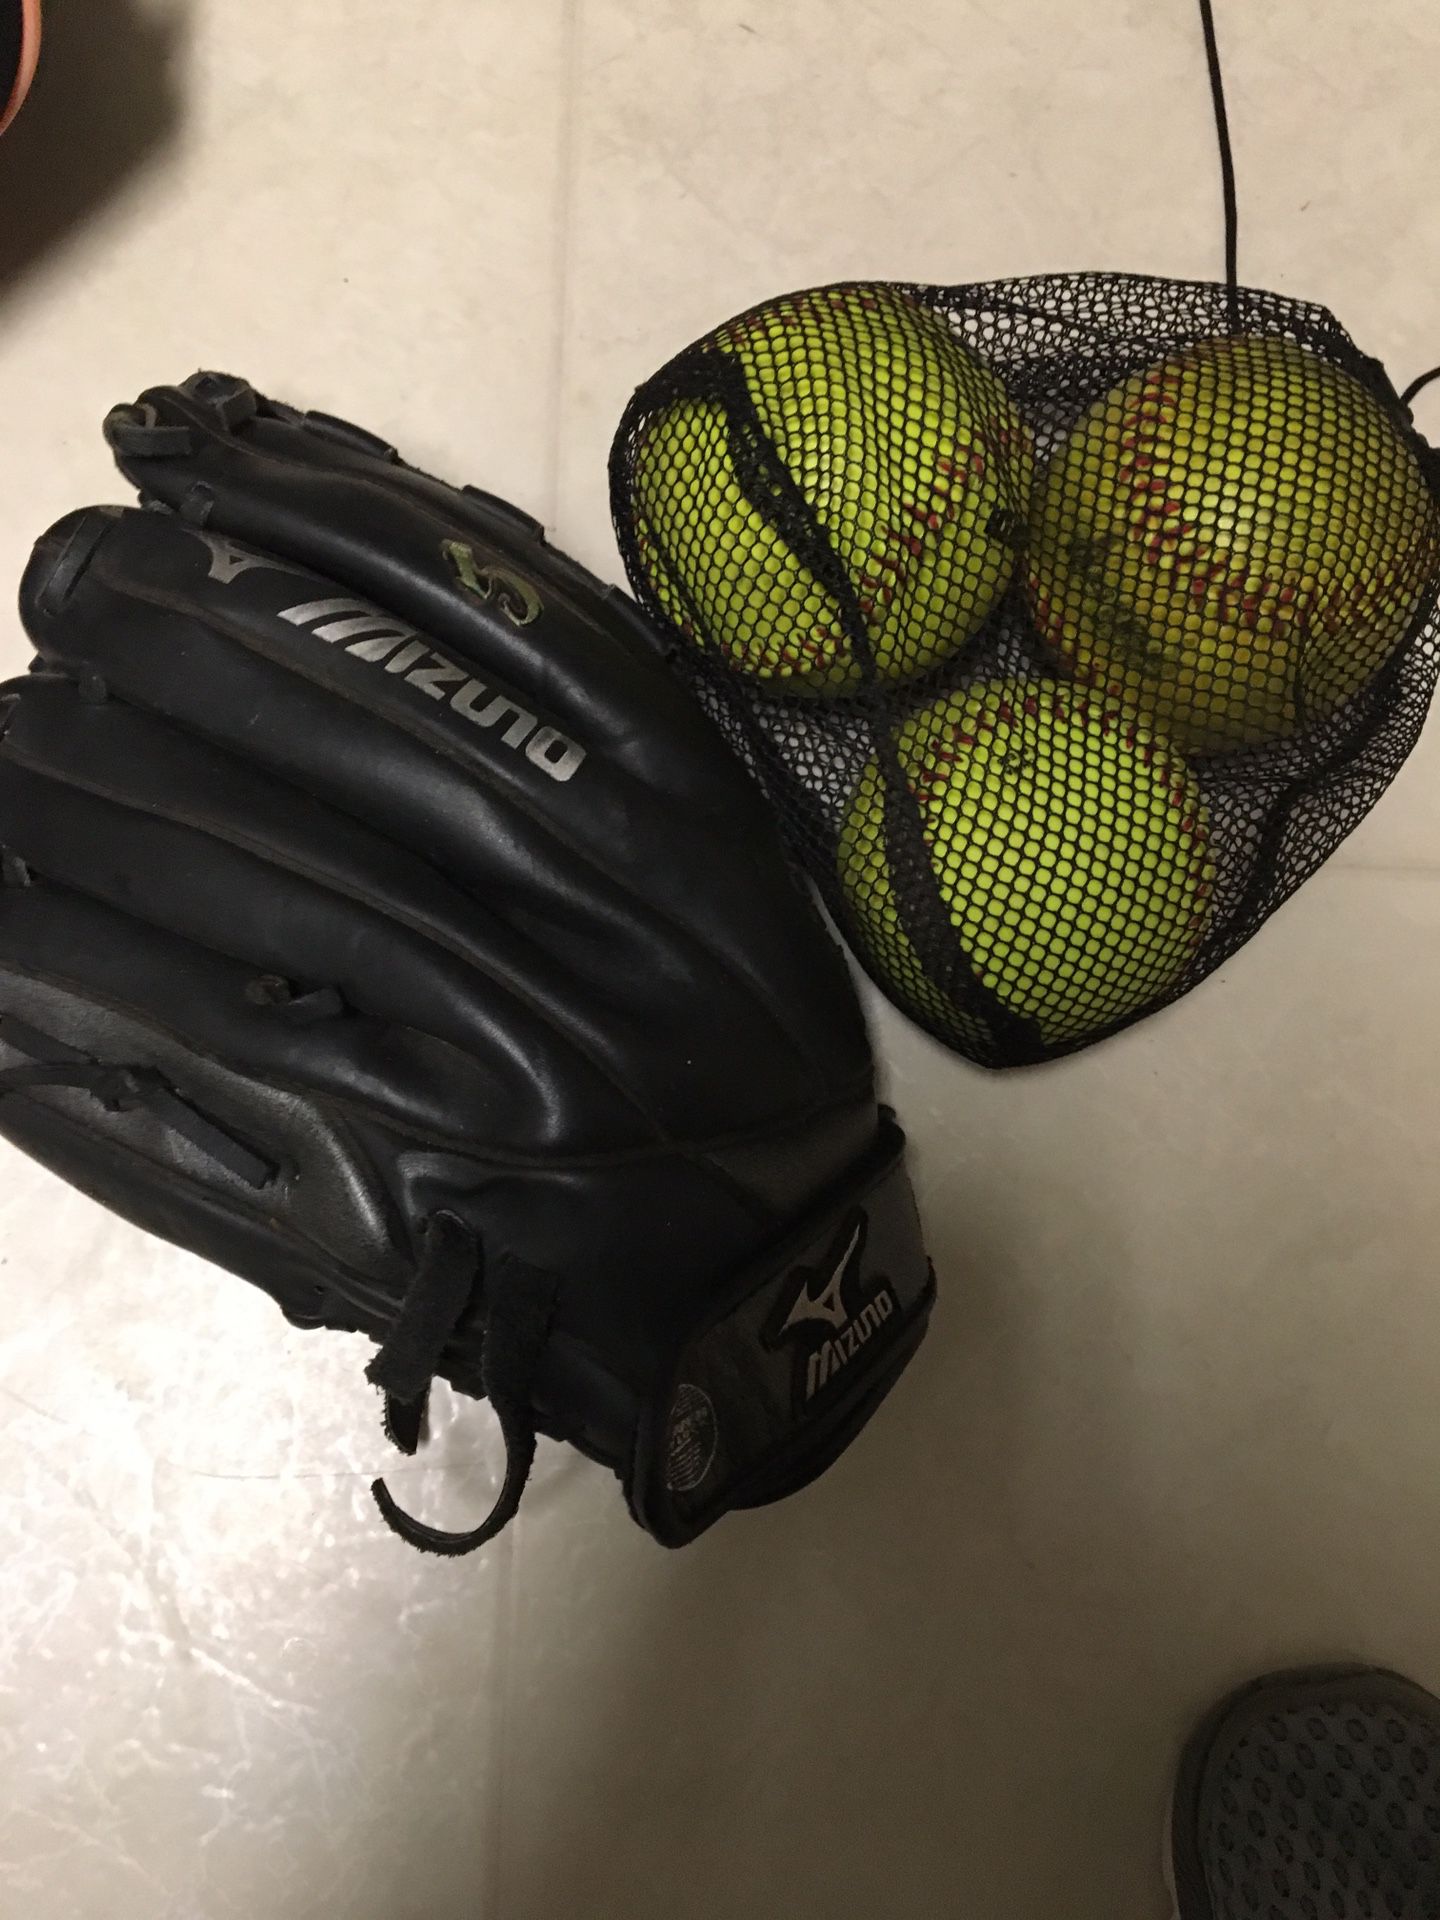 Mizuno softball glove and 3 balls 45.00